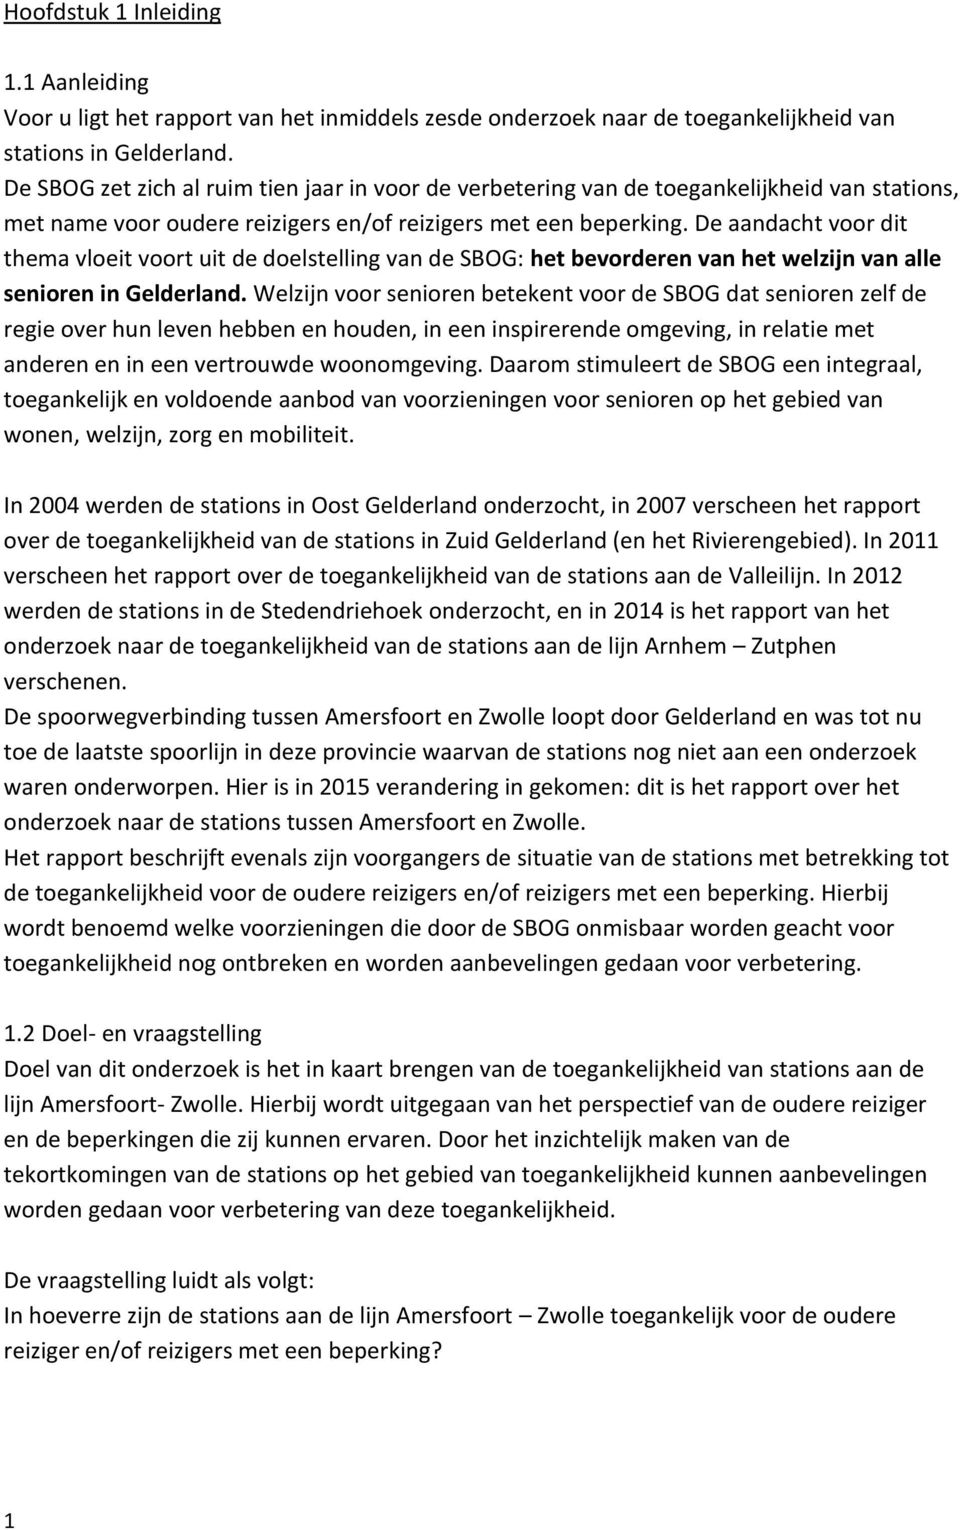 De aandacht voor dit thema vloeit voort uit de doelstelling van de SBOG: het bevorderen van het welzijn van alle senioren in Gelderland.